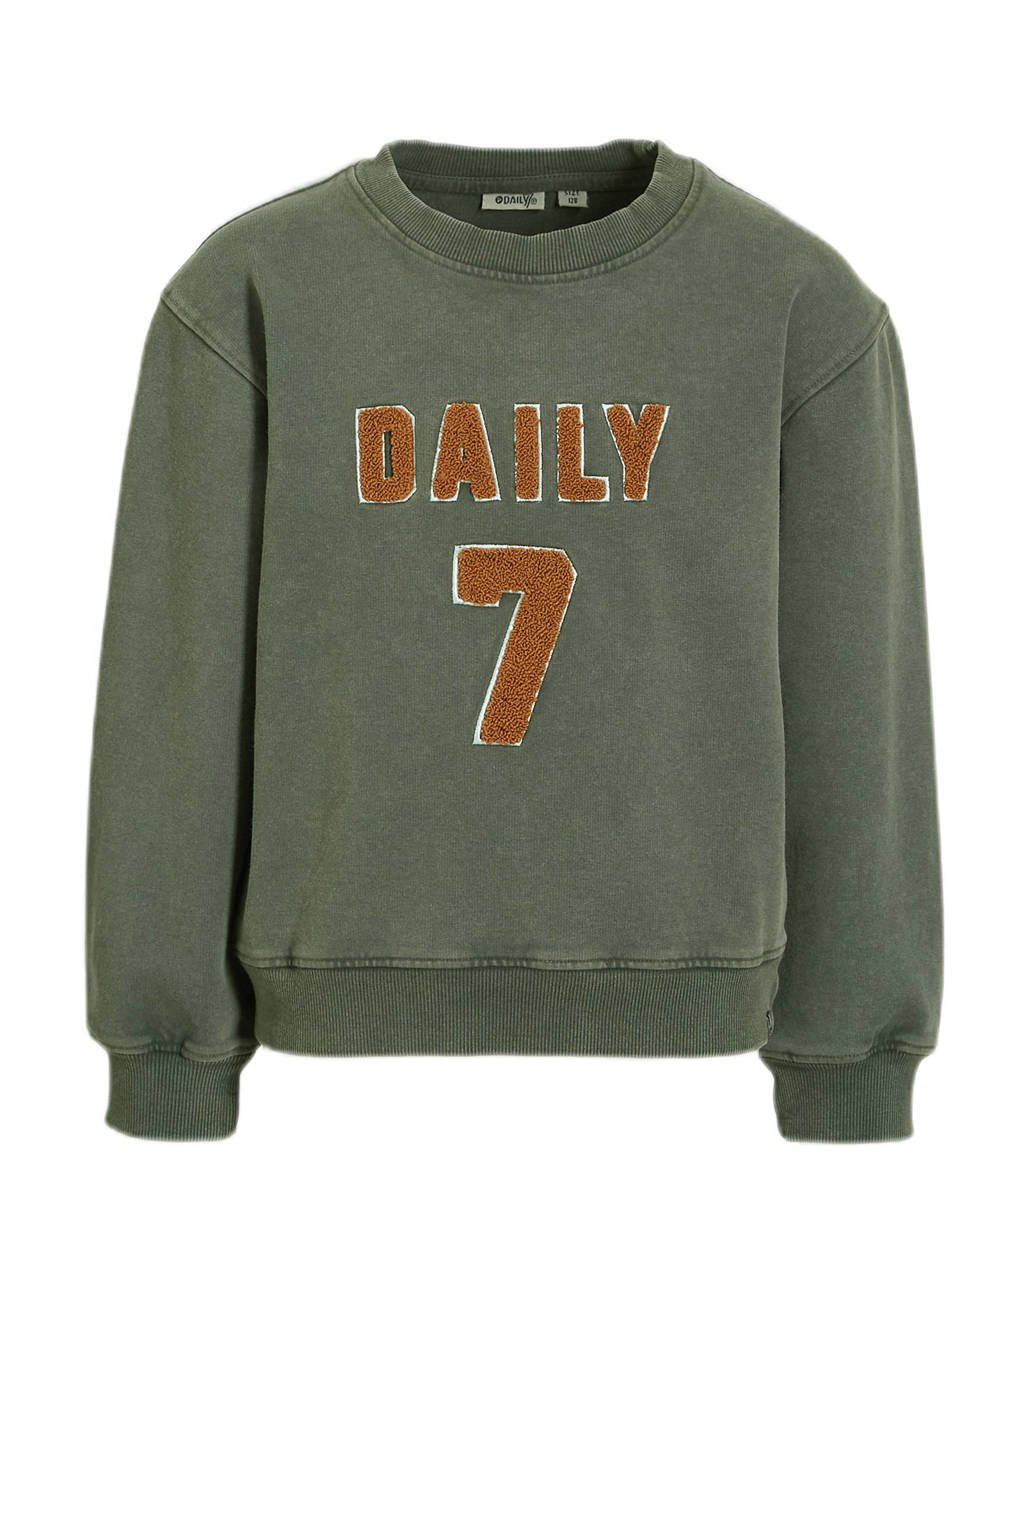 Daily7 sweater met tekst groen